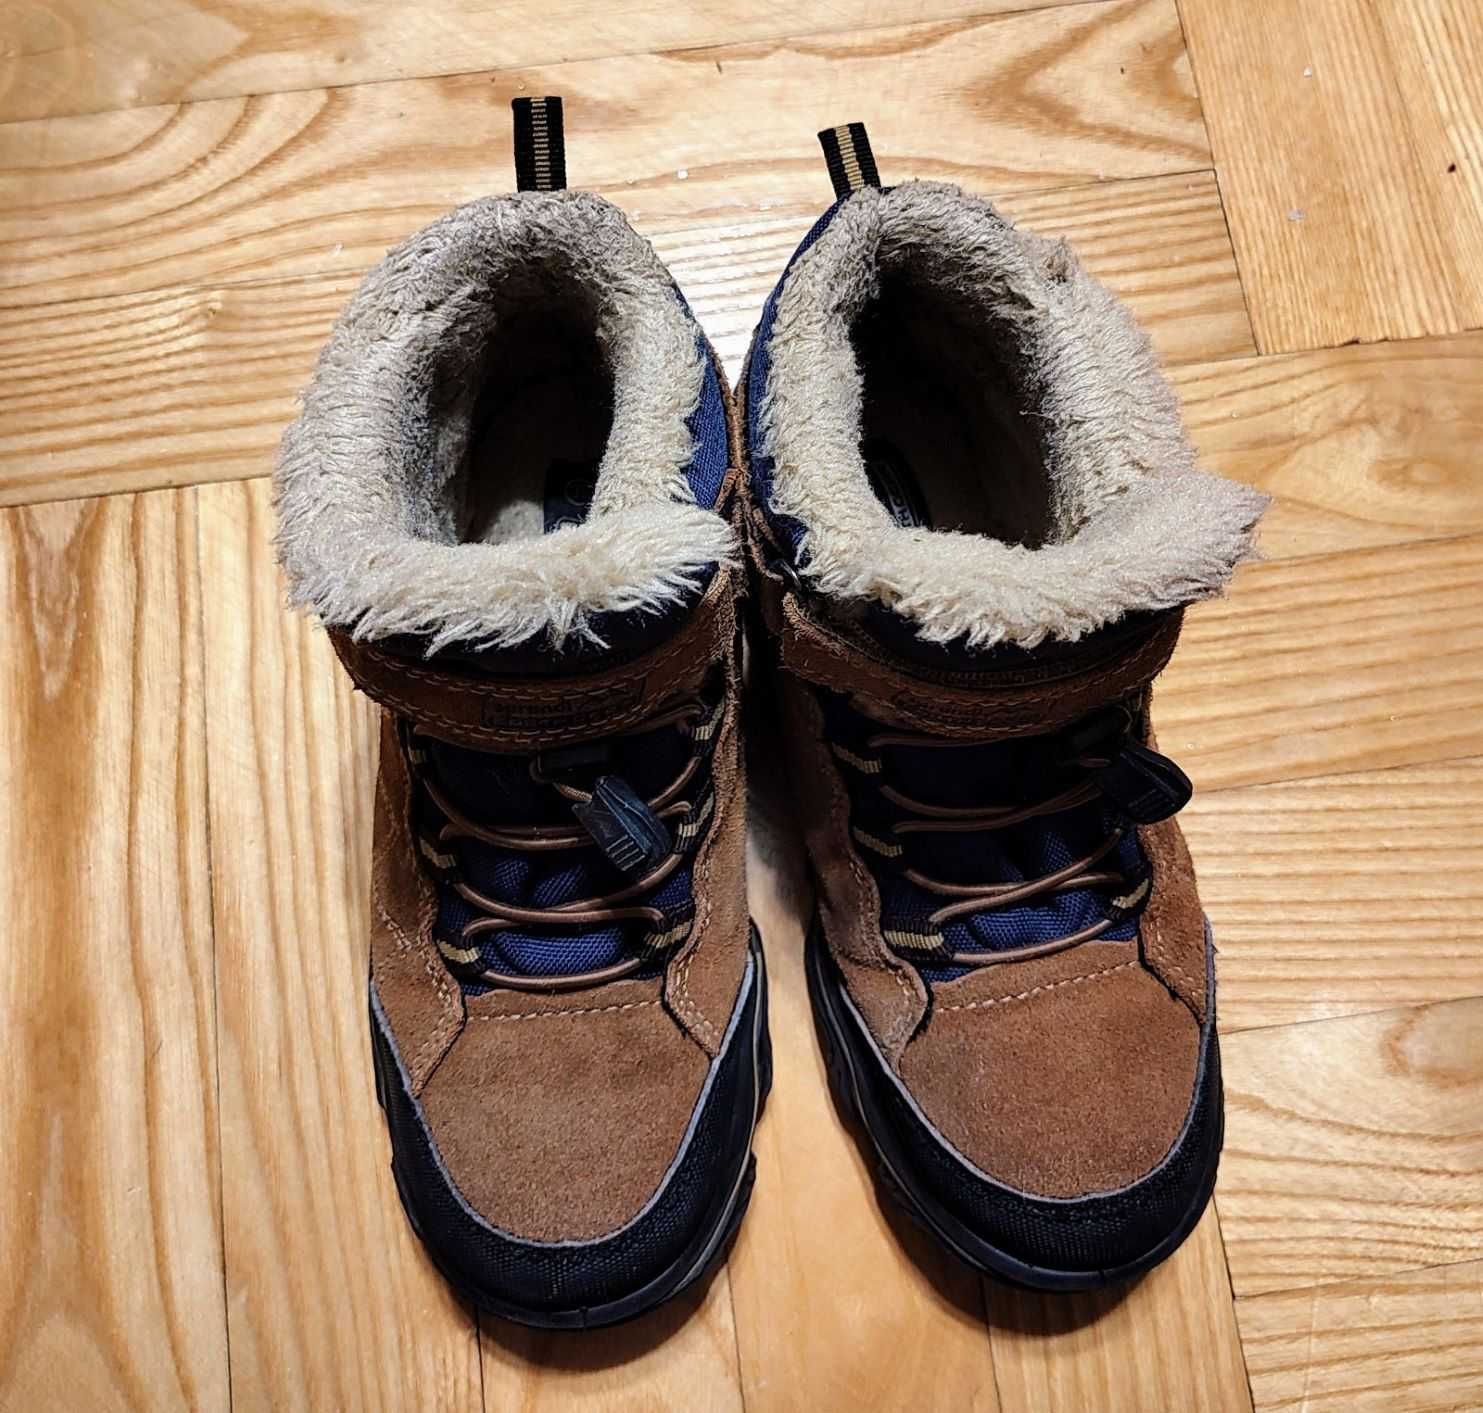 buty chłopięce zimowe SPRANDI, śniegowce, rozmiar 35